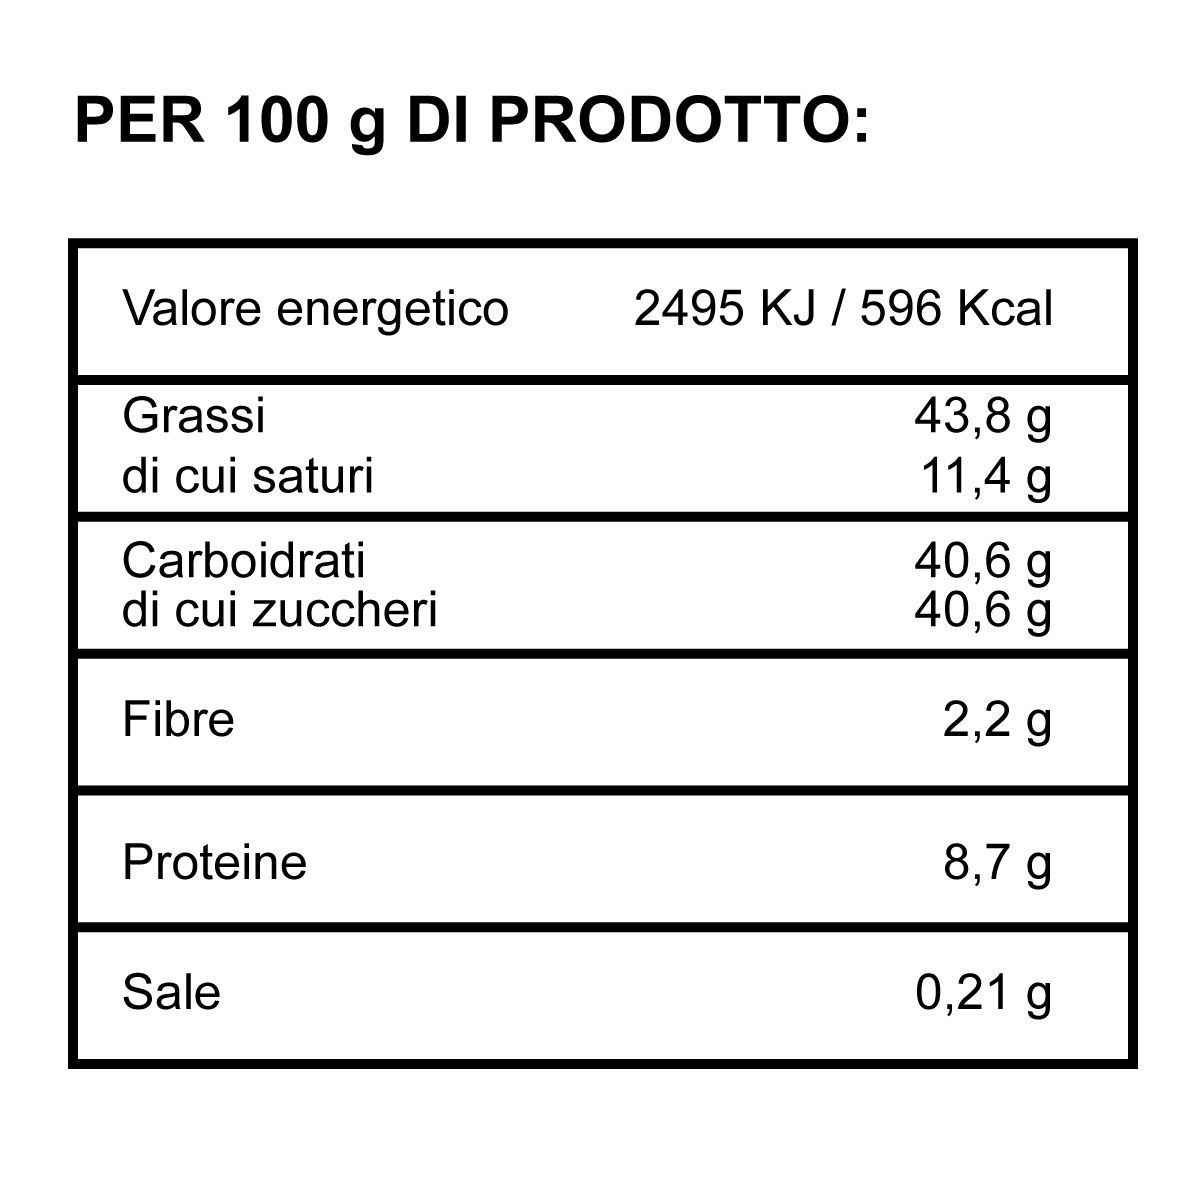 Crema al Pistacchio - Valori Nutrizionali - Panificio D'Angelo